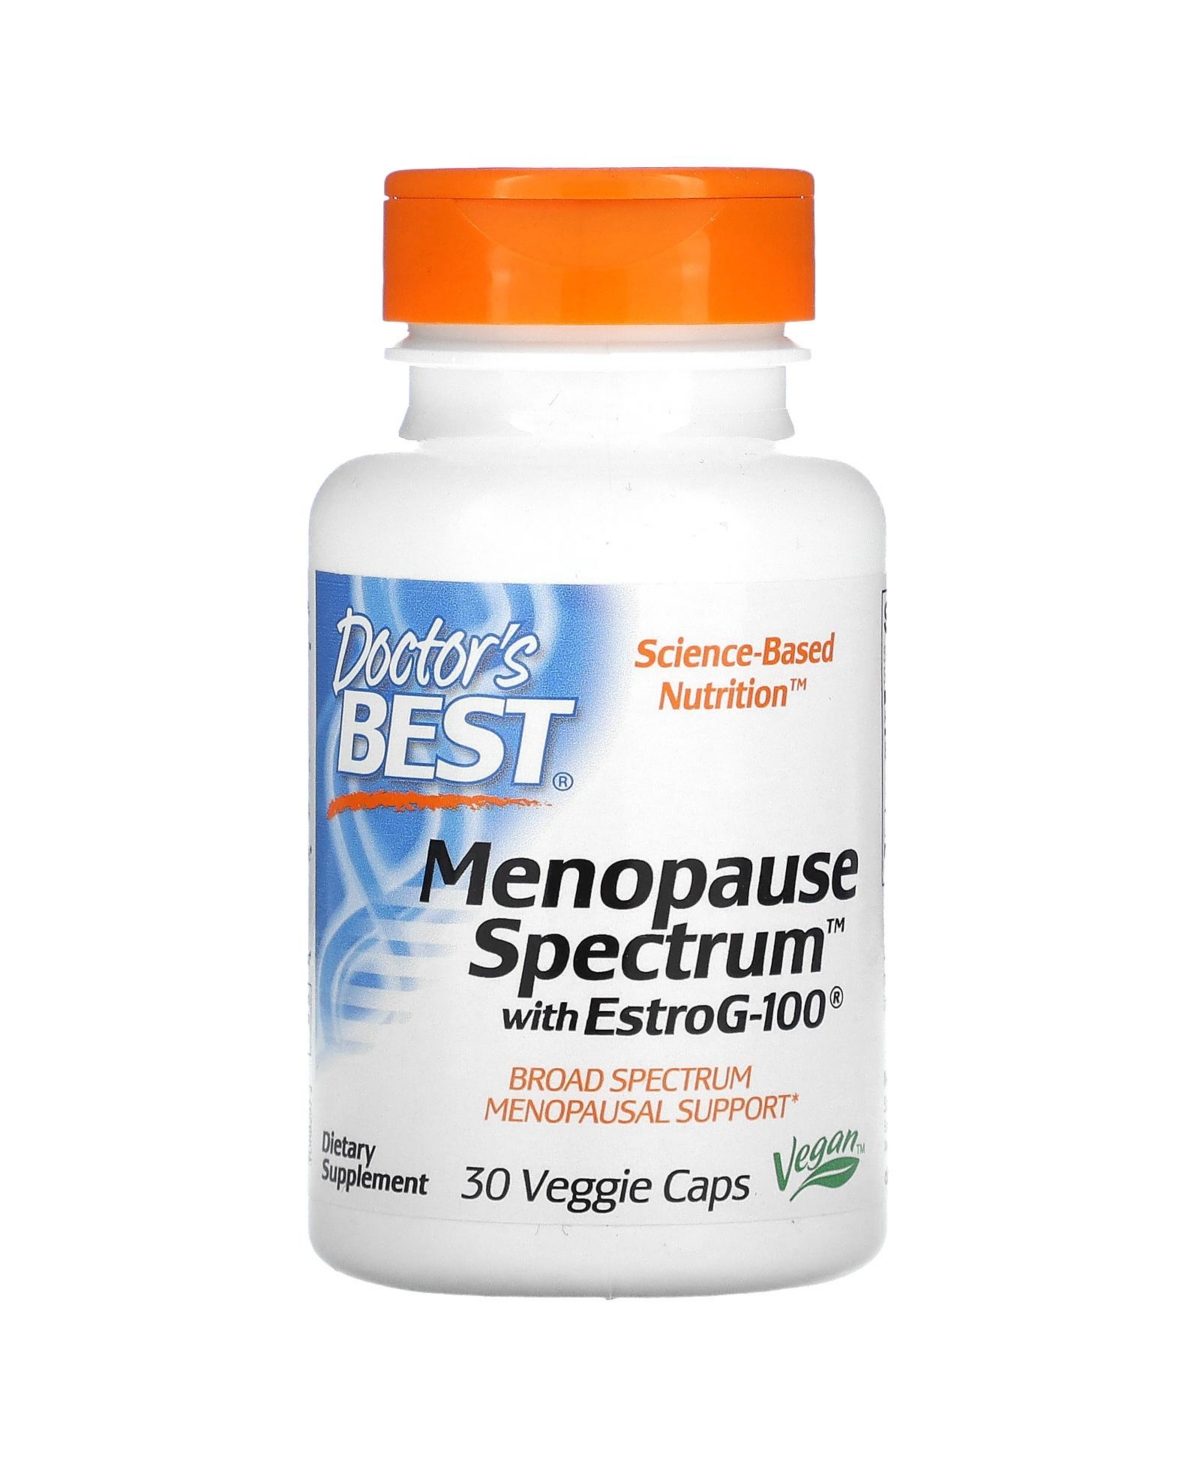 Menopause Spectrum with EstroG-100 - 30 Veggie Caps - Assorted Pre-Pack